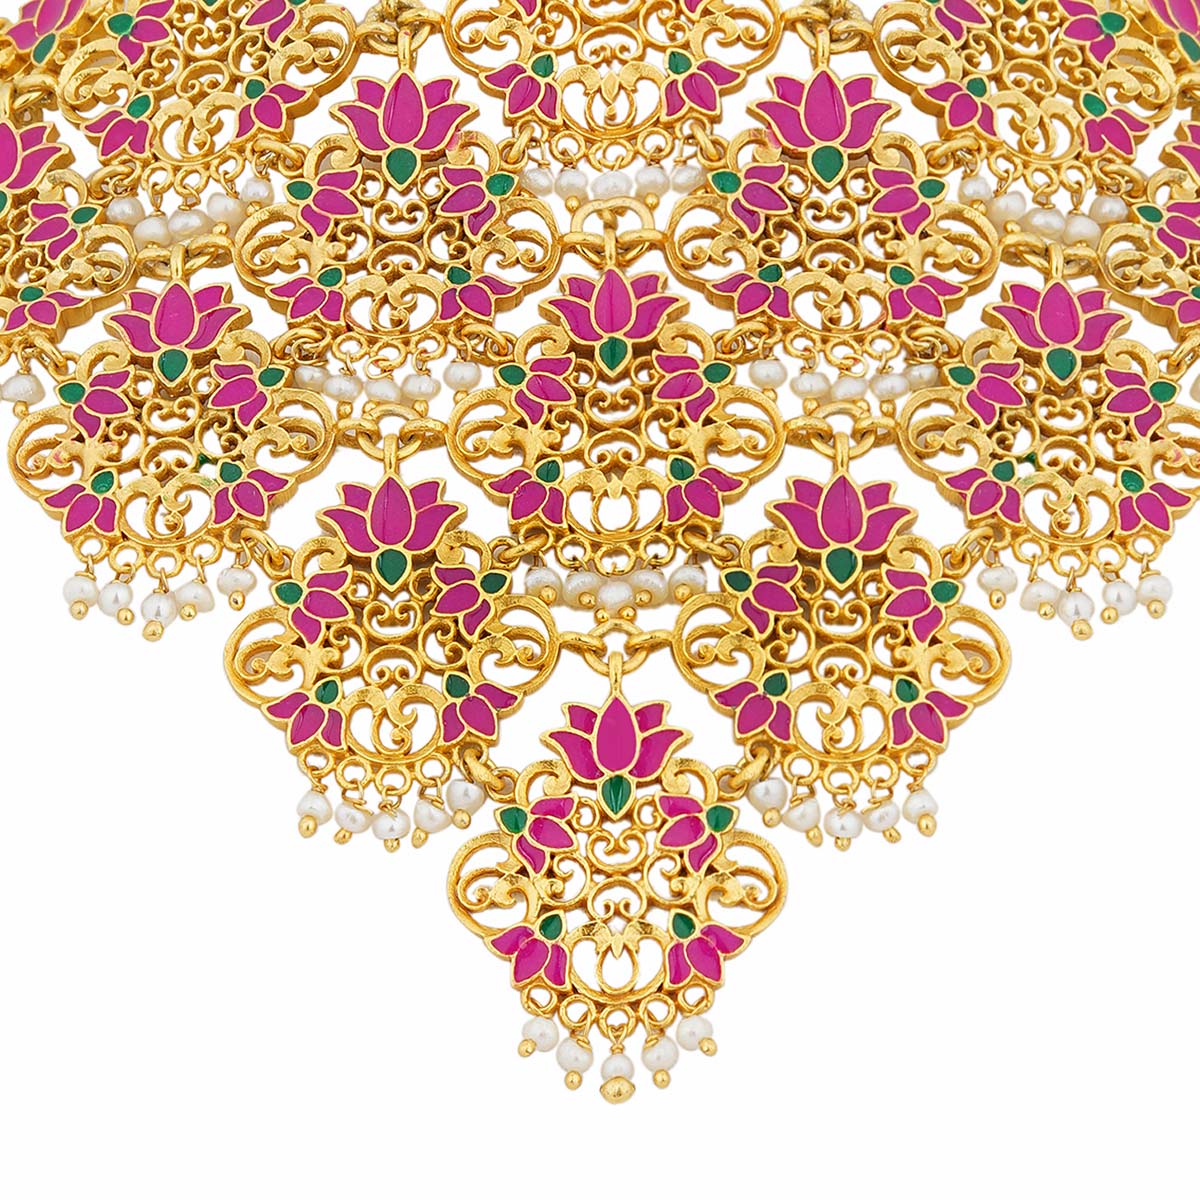 Rani Lotus Choker Necklace in Pink Enamel